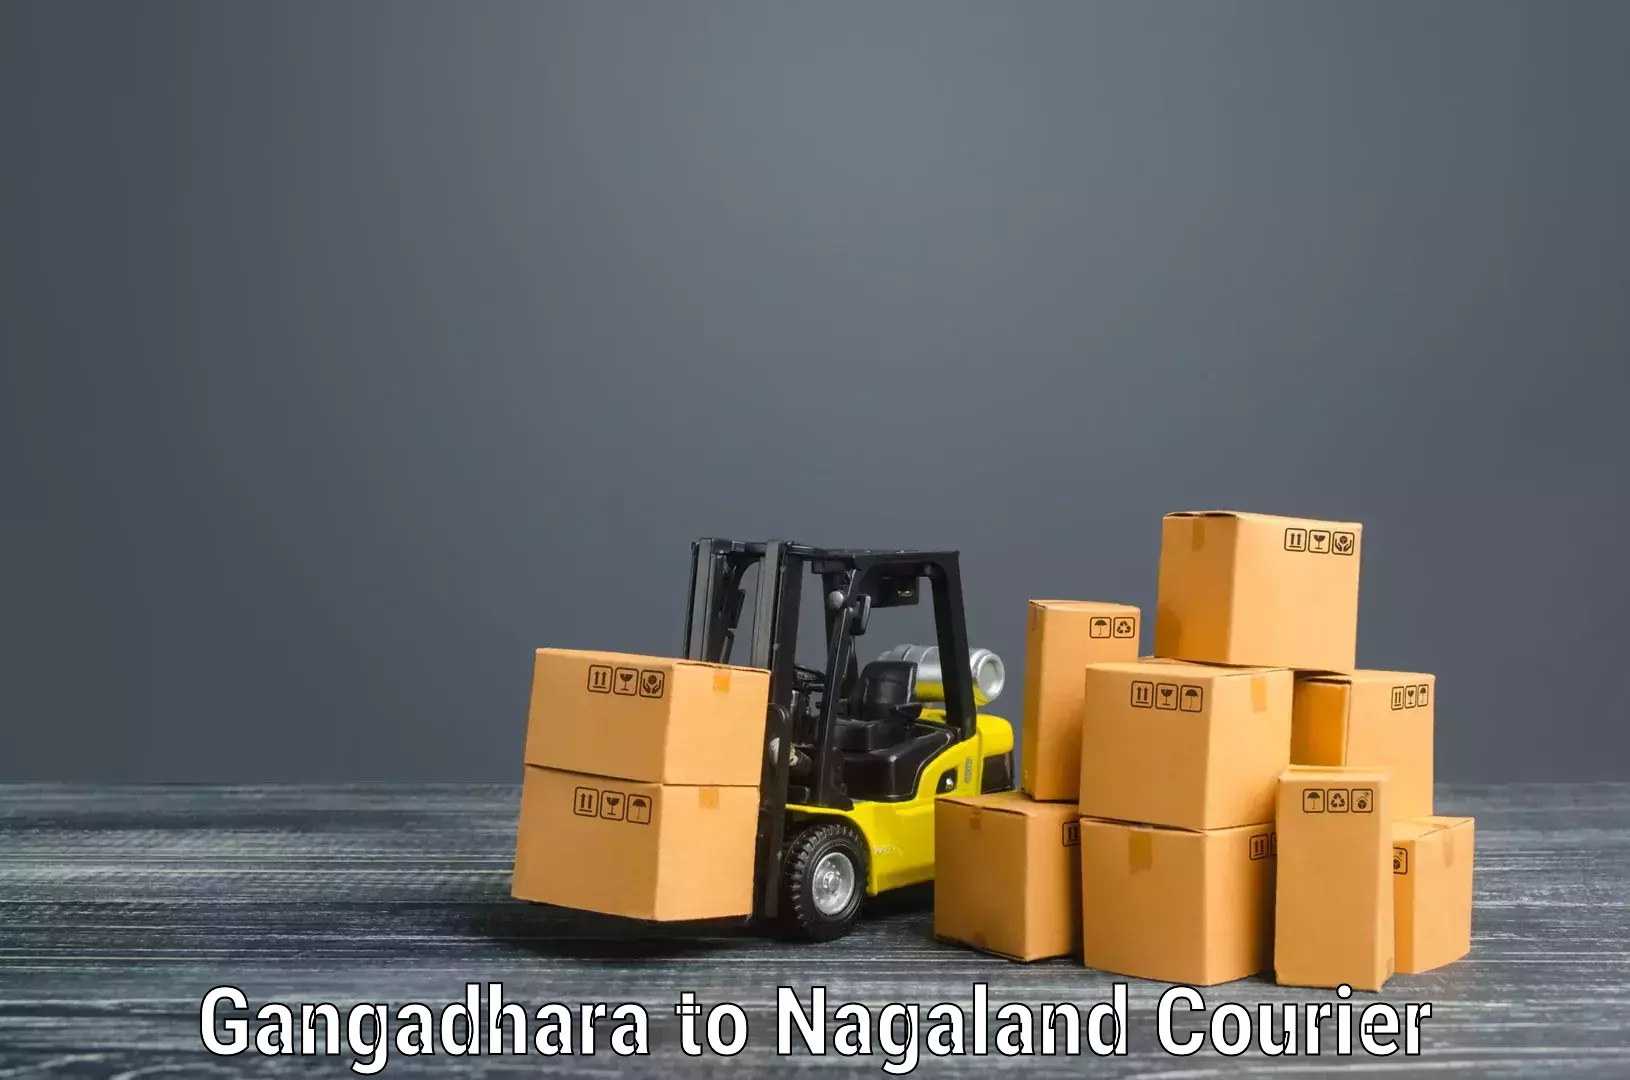 Furniture transport service Gangadhara to Longleng